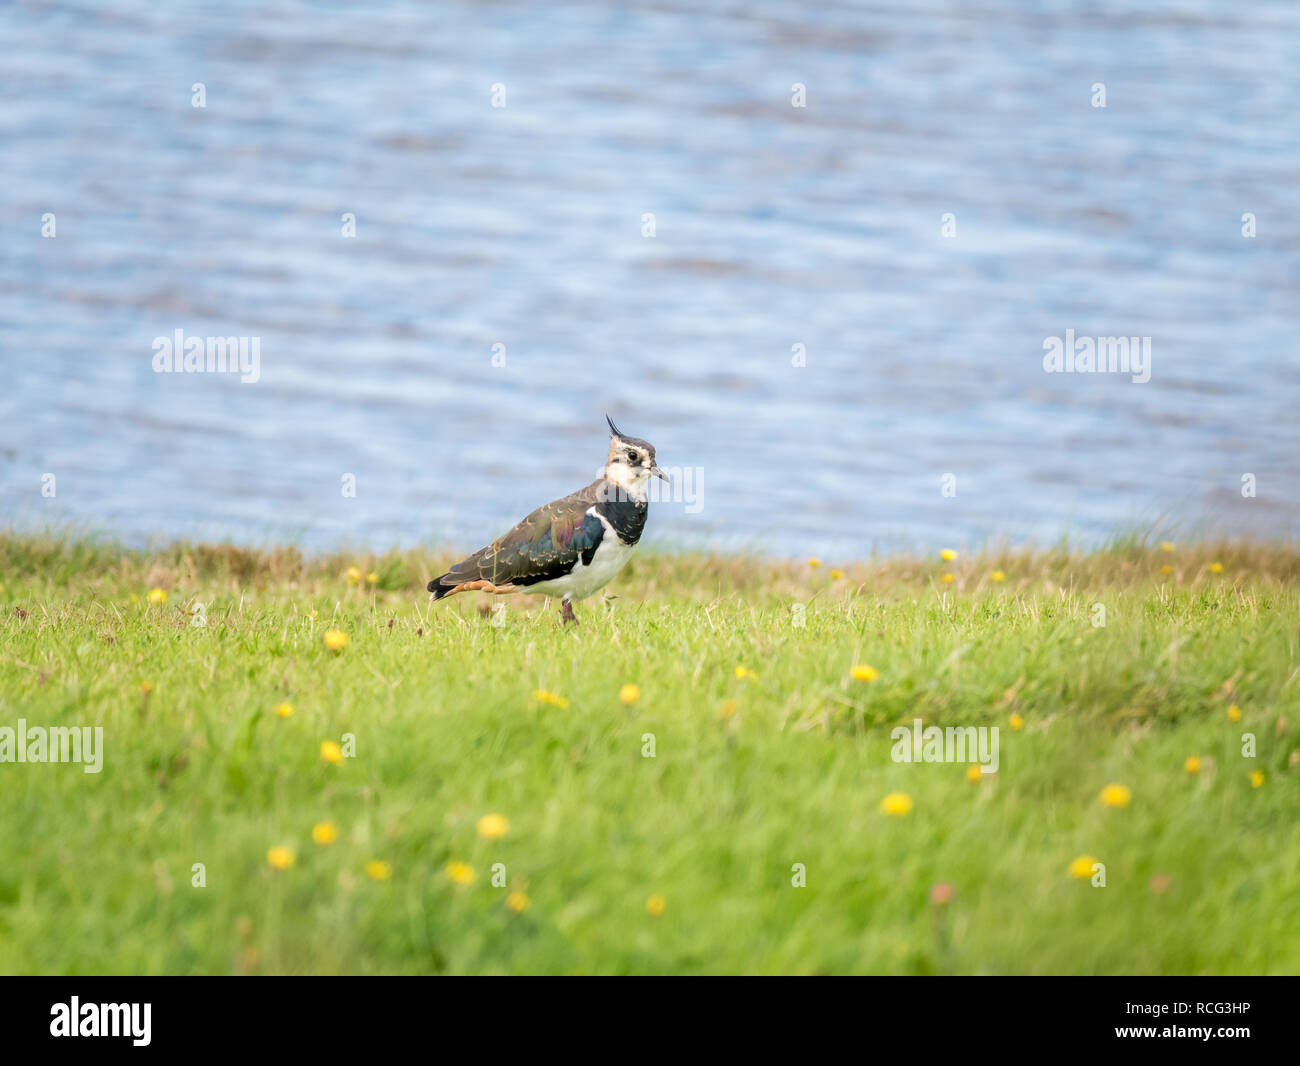 Porträt der nördlichen Kiebitz, Vanellus vanellus, im Gras in der Nähe von Wasser, Niederlande - geringe Schärfentiefe, selektiver Fokus Stockfoto